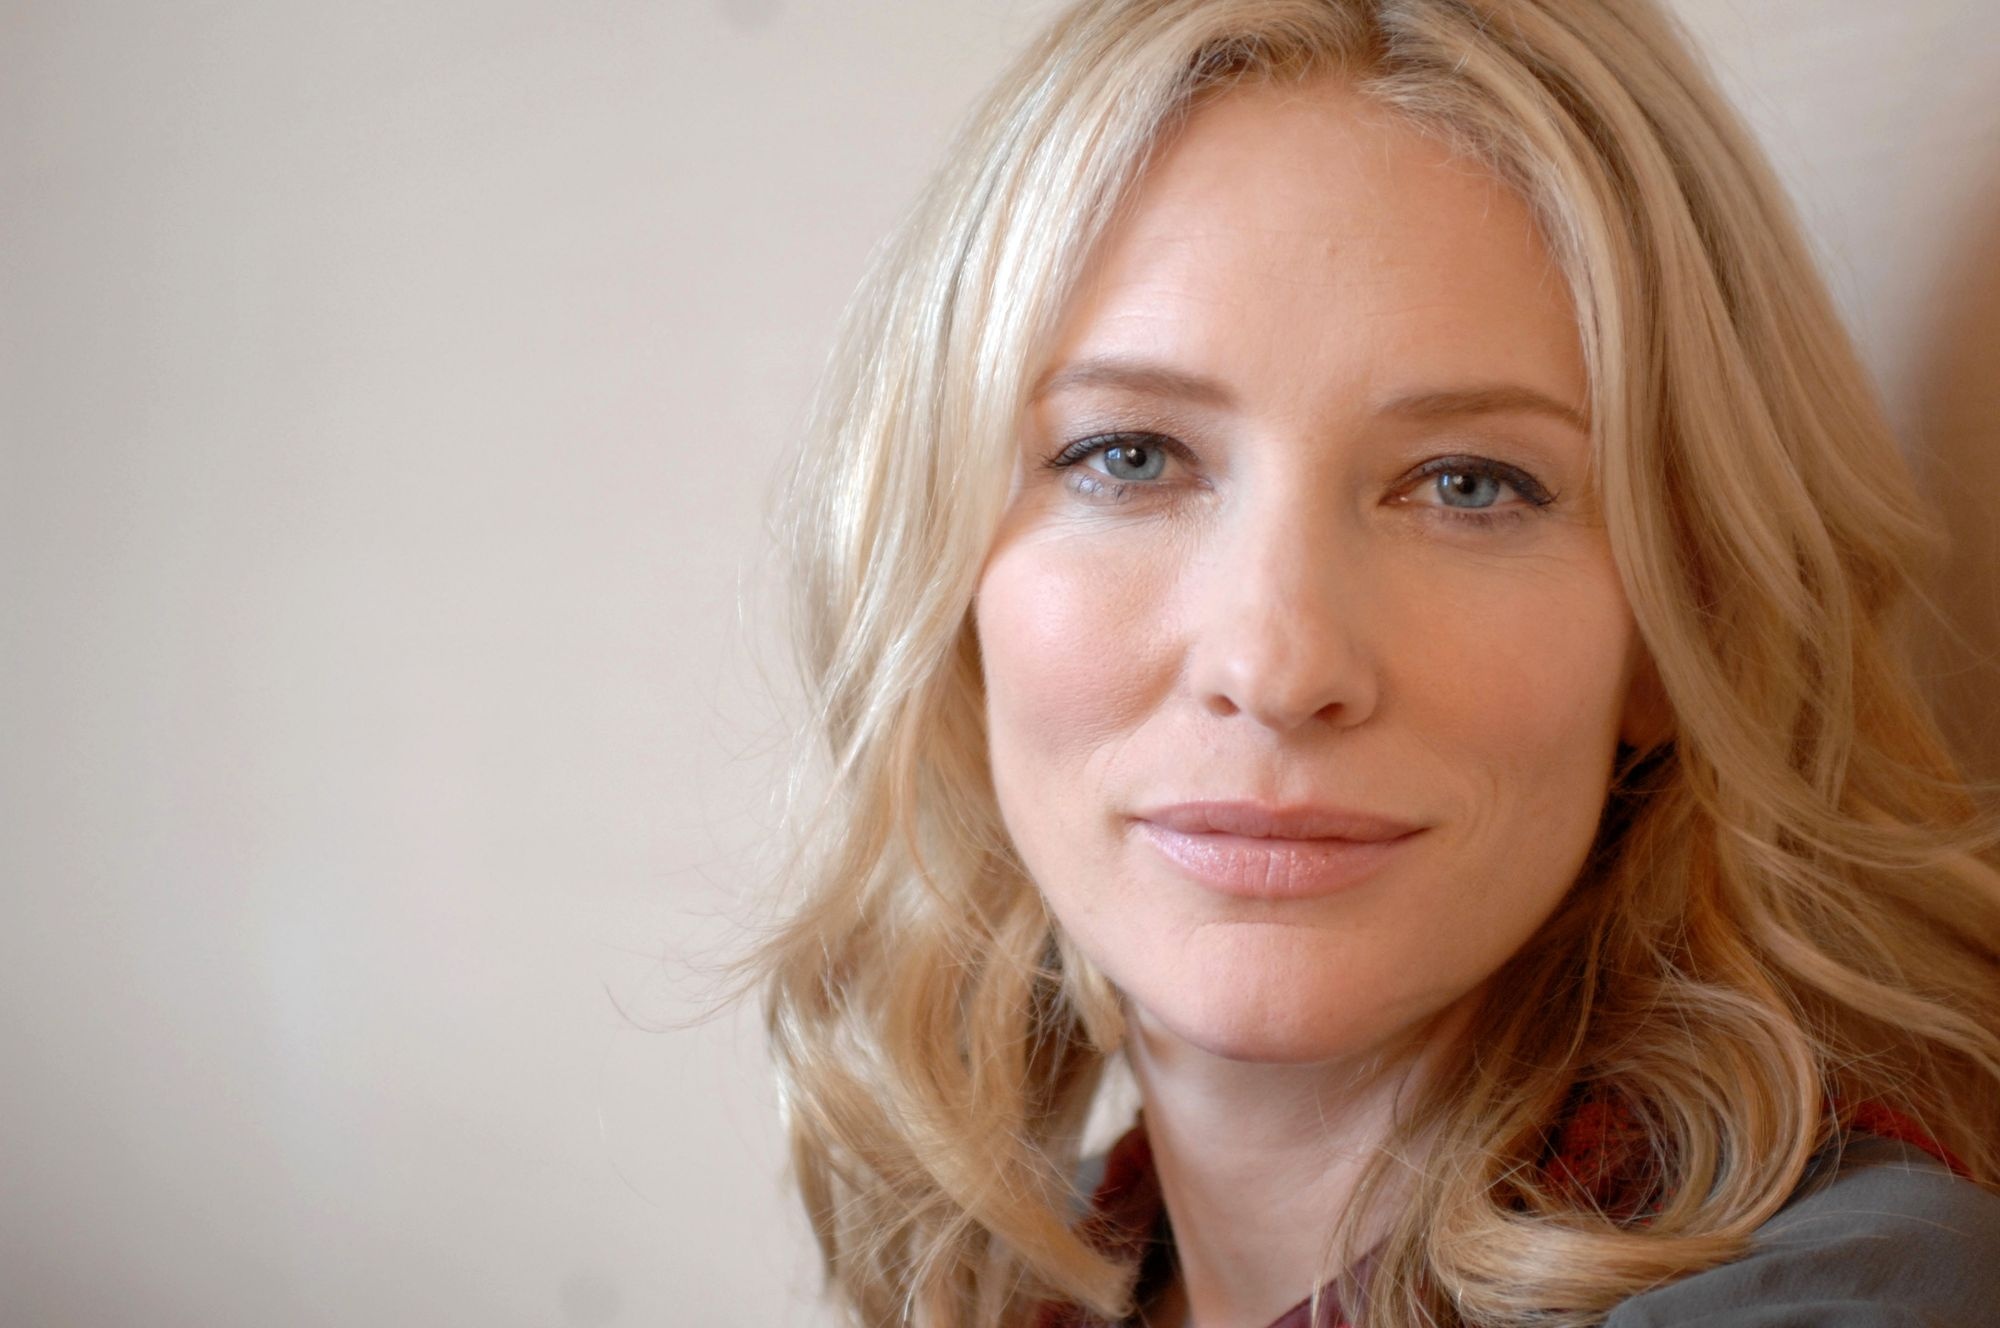 Cate Blanchett, Face close-up, Celebrity wallpaper, Px resolution, 2000x1330 HD Desktop